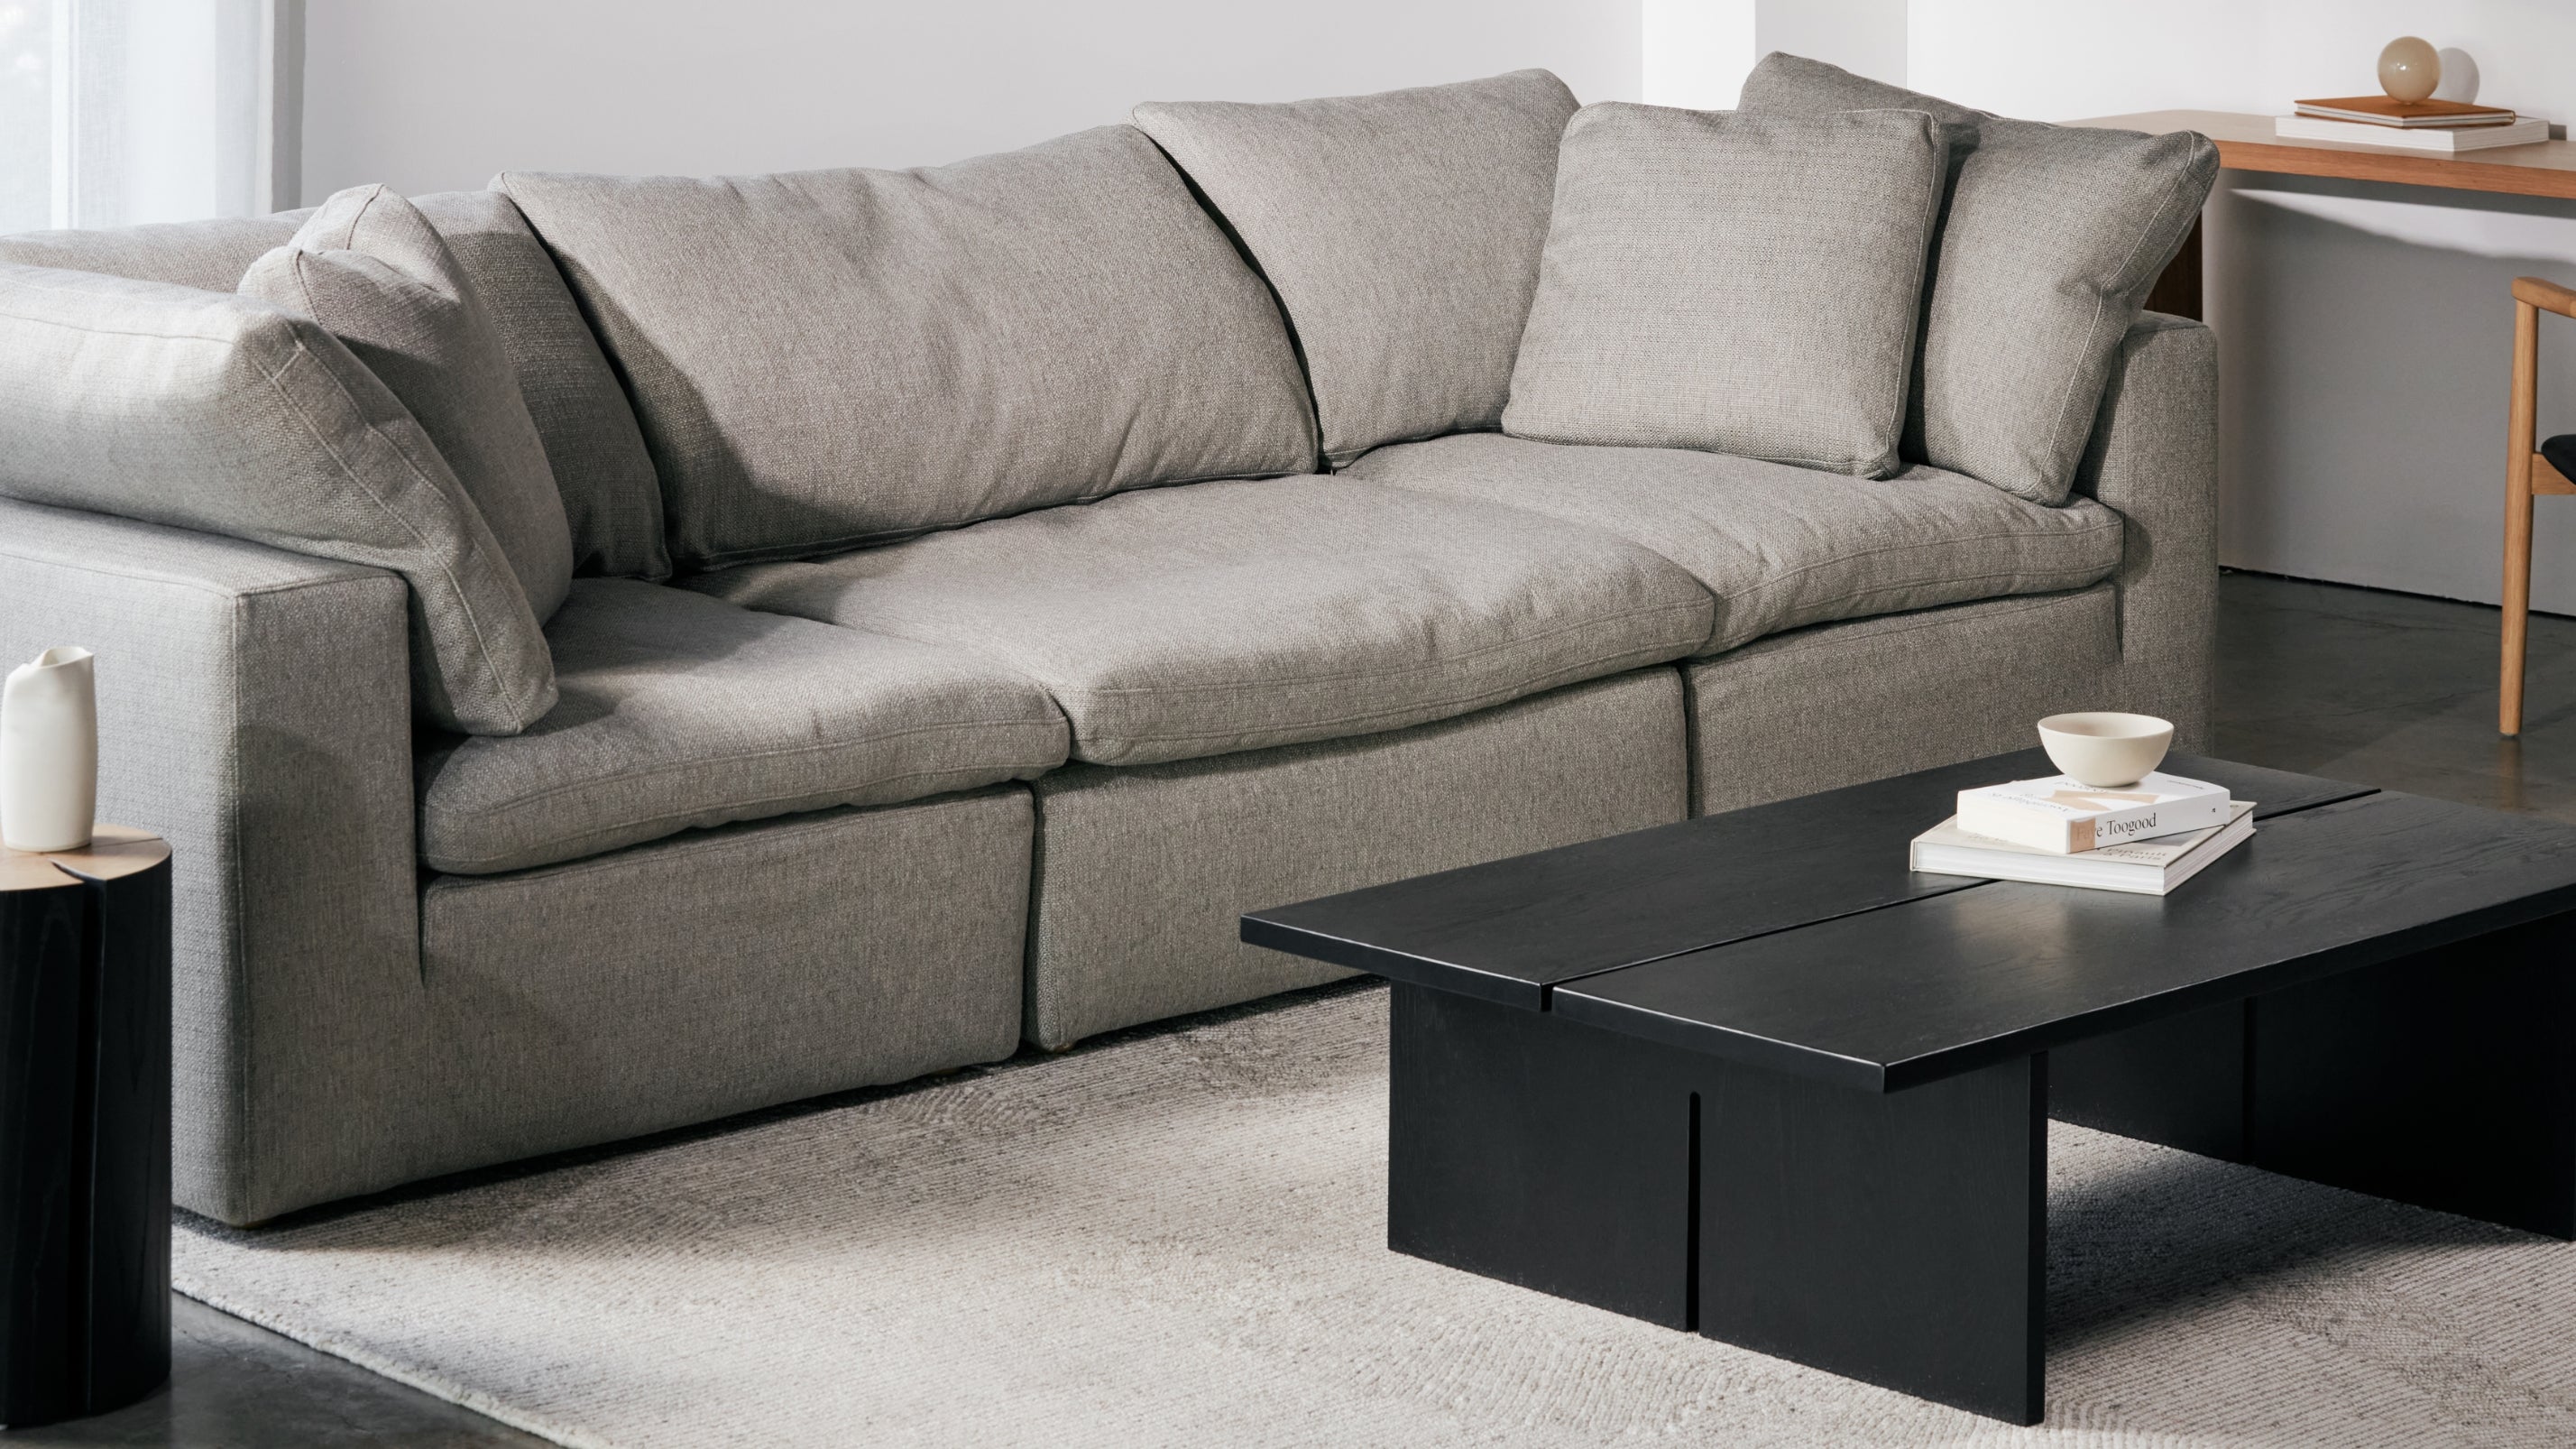 Movie Night™ 3-Piece Modular Sofa, Standard, Brie - Image 8